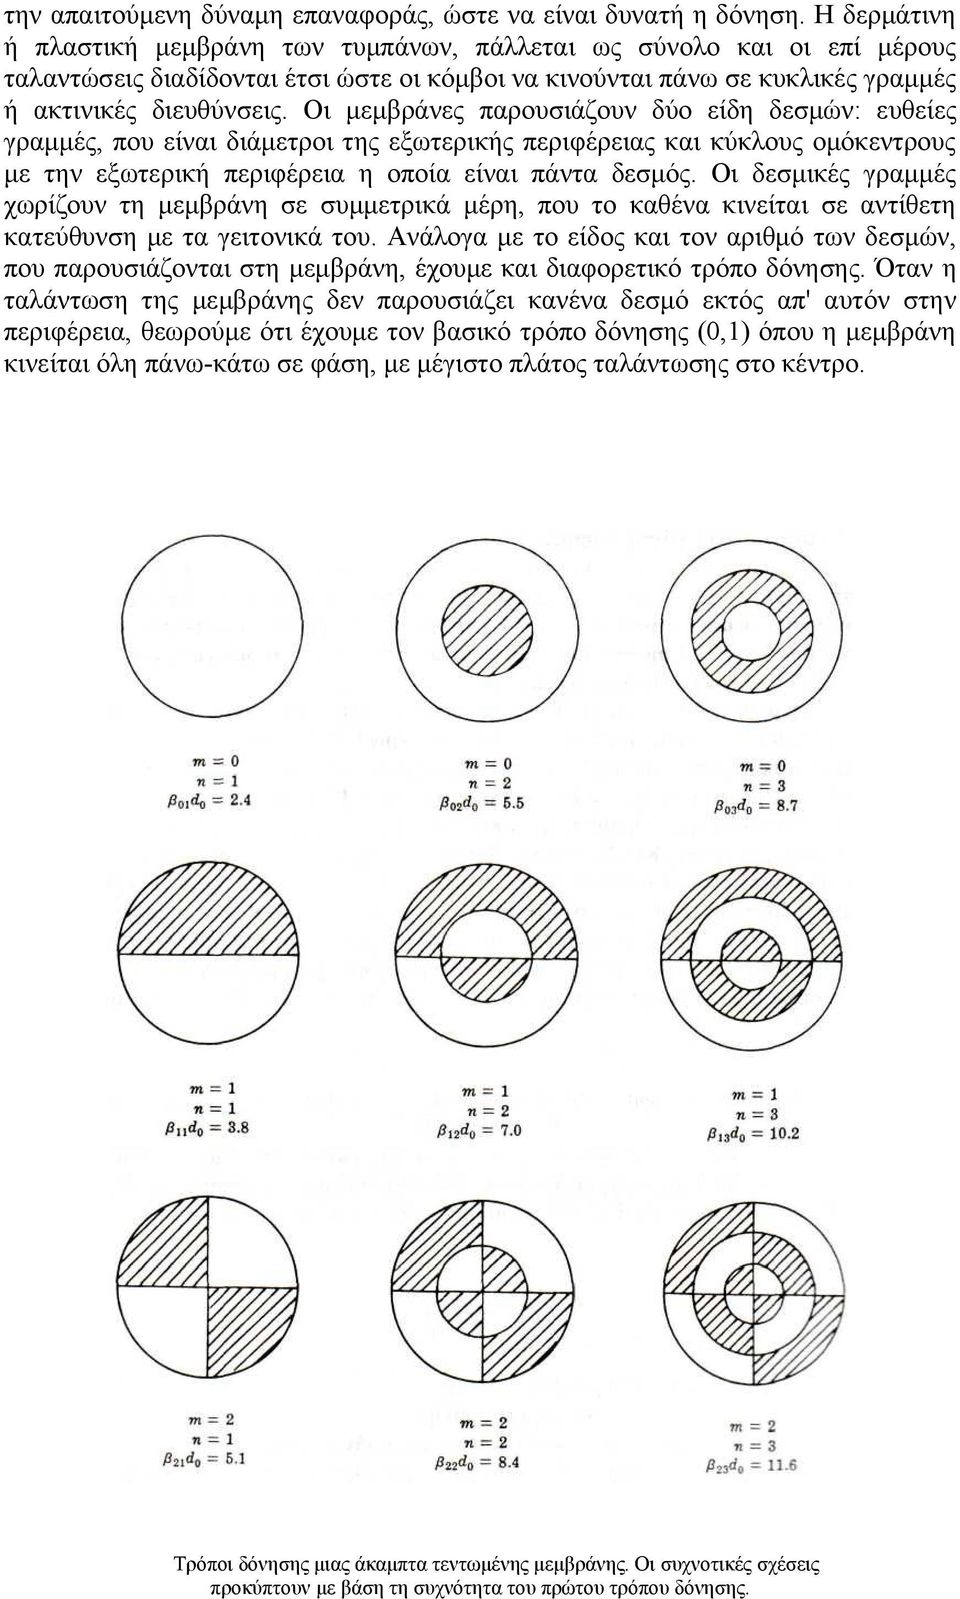 Οι μεμβράνες παρουσιάζουν δύο είδη δεσμών: ευθείες γραμμές, που είναι διάμετροι της εξωτερικής περιφέρειας και κύκλους ομόκεντρους με την εξωτερική περιφέρεια η οποία είναι πάντα δεσμός.